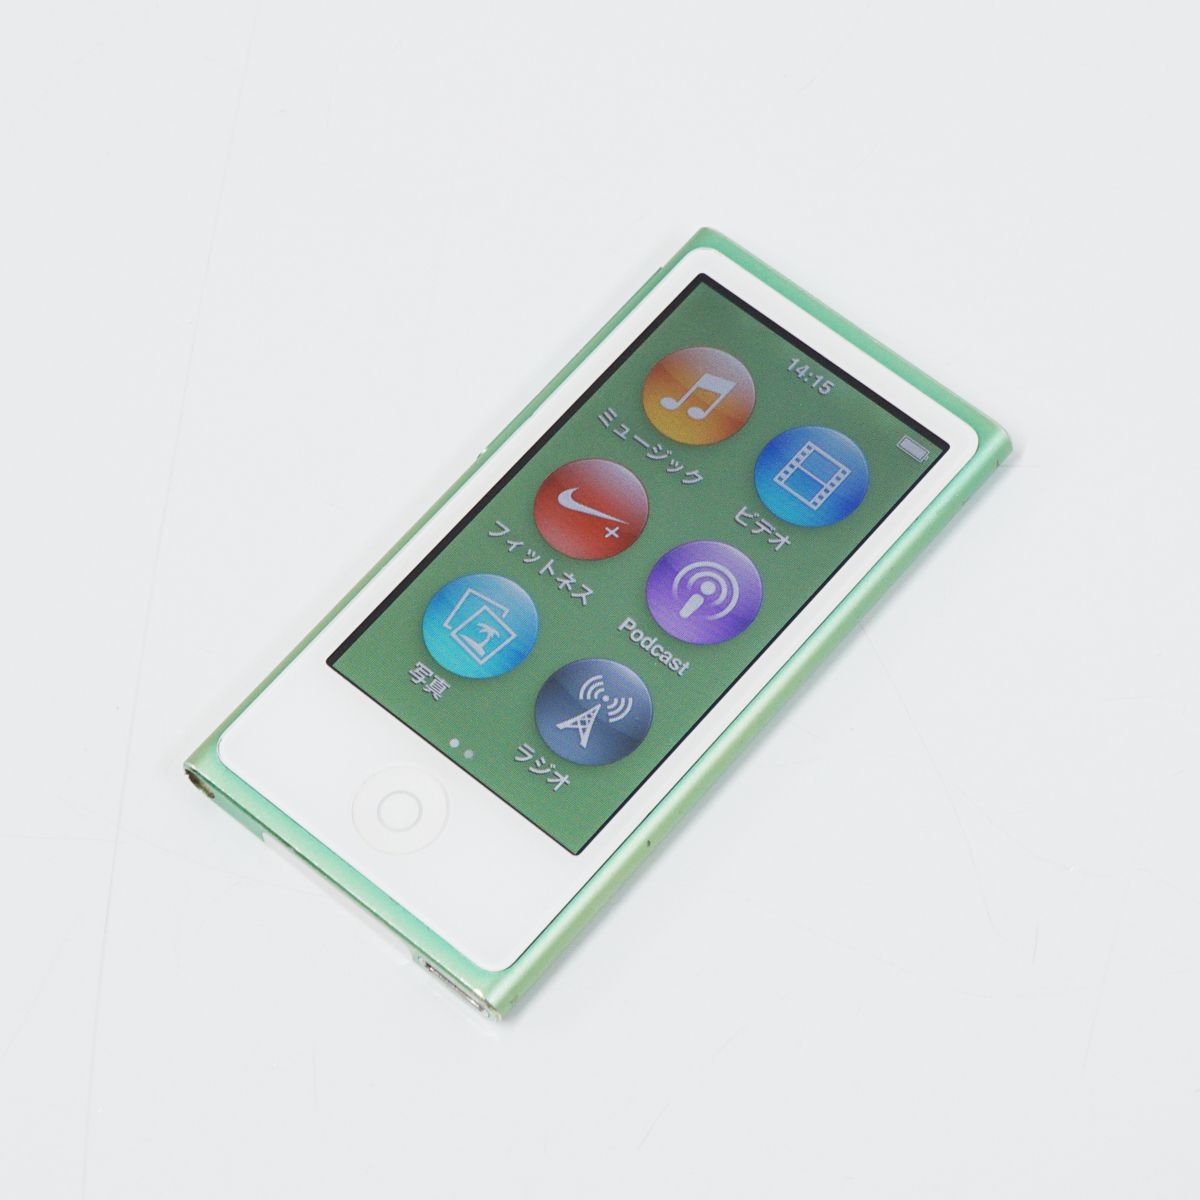 アップル iPod Nano 16GB MD478J/A デジタルオーディオプレーヤーの商品画像